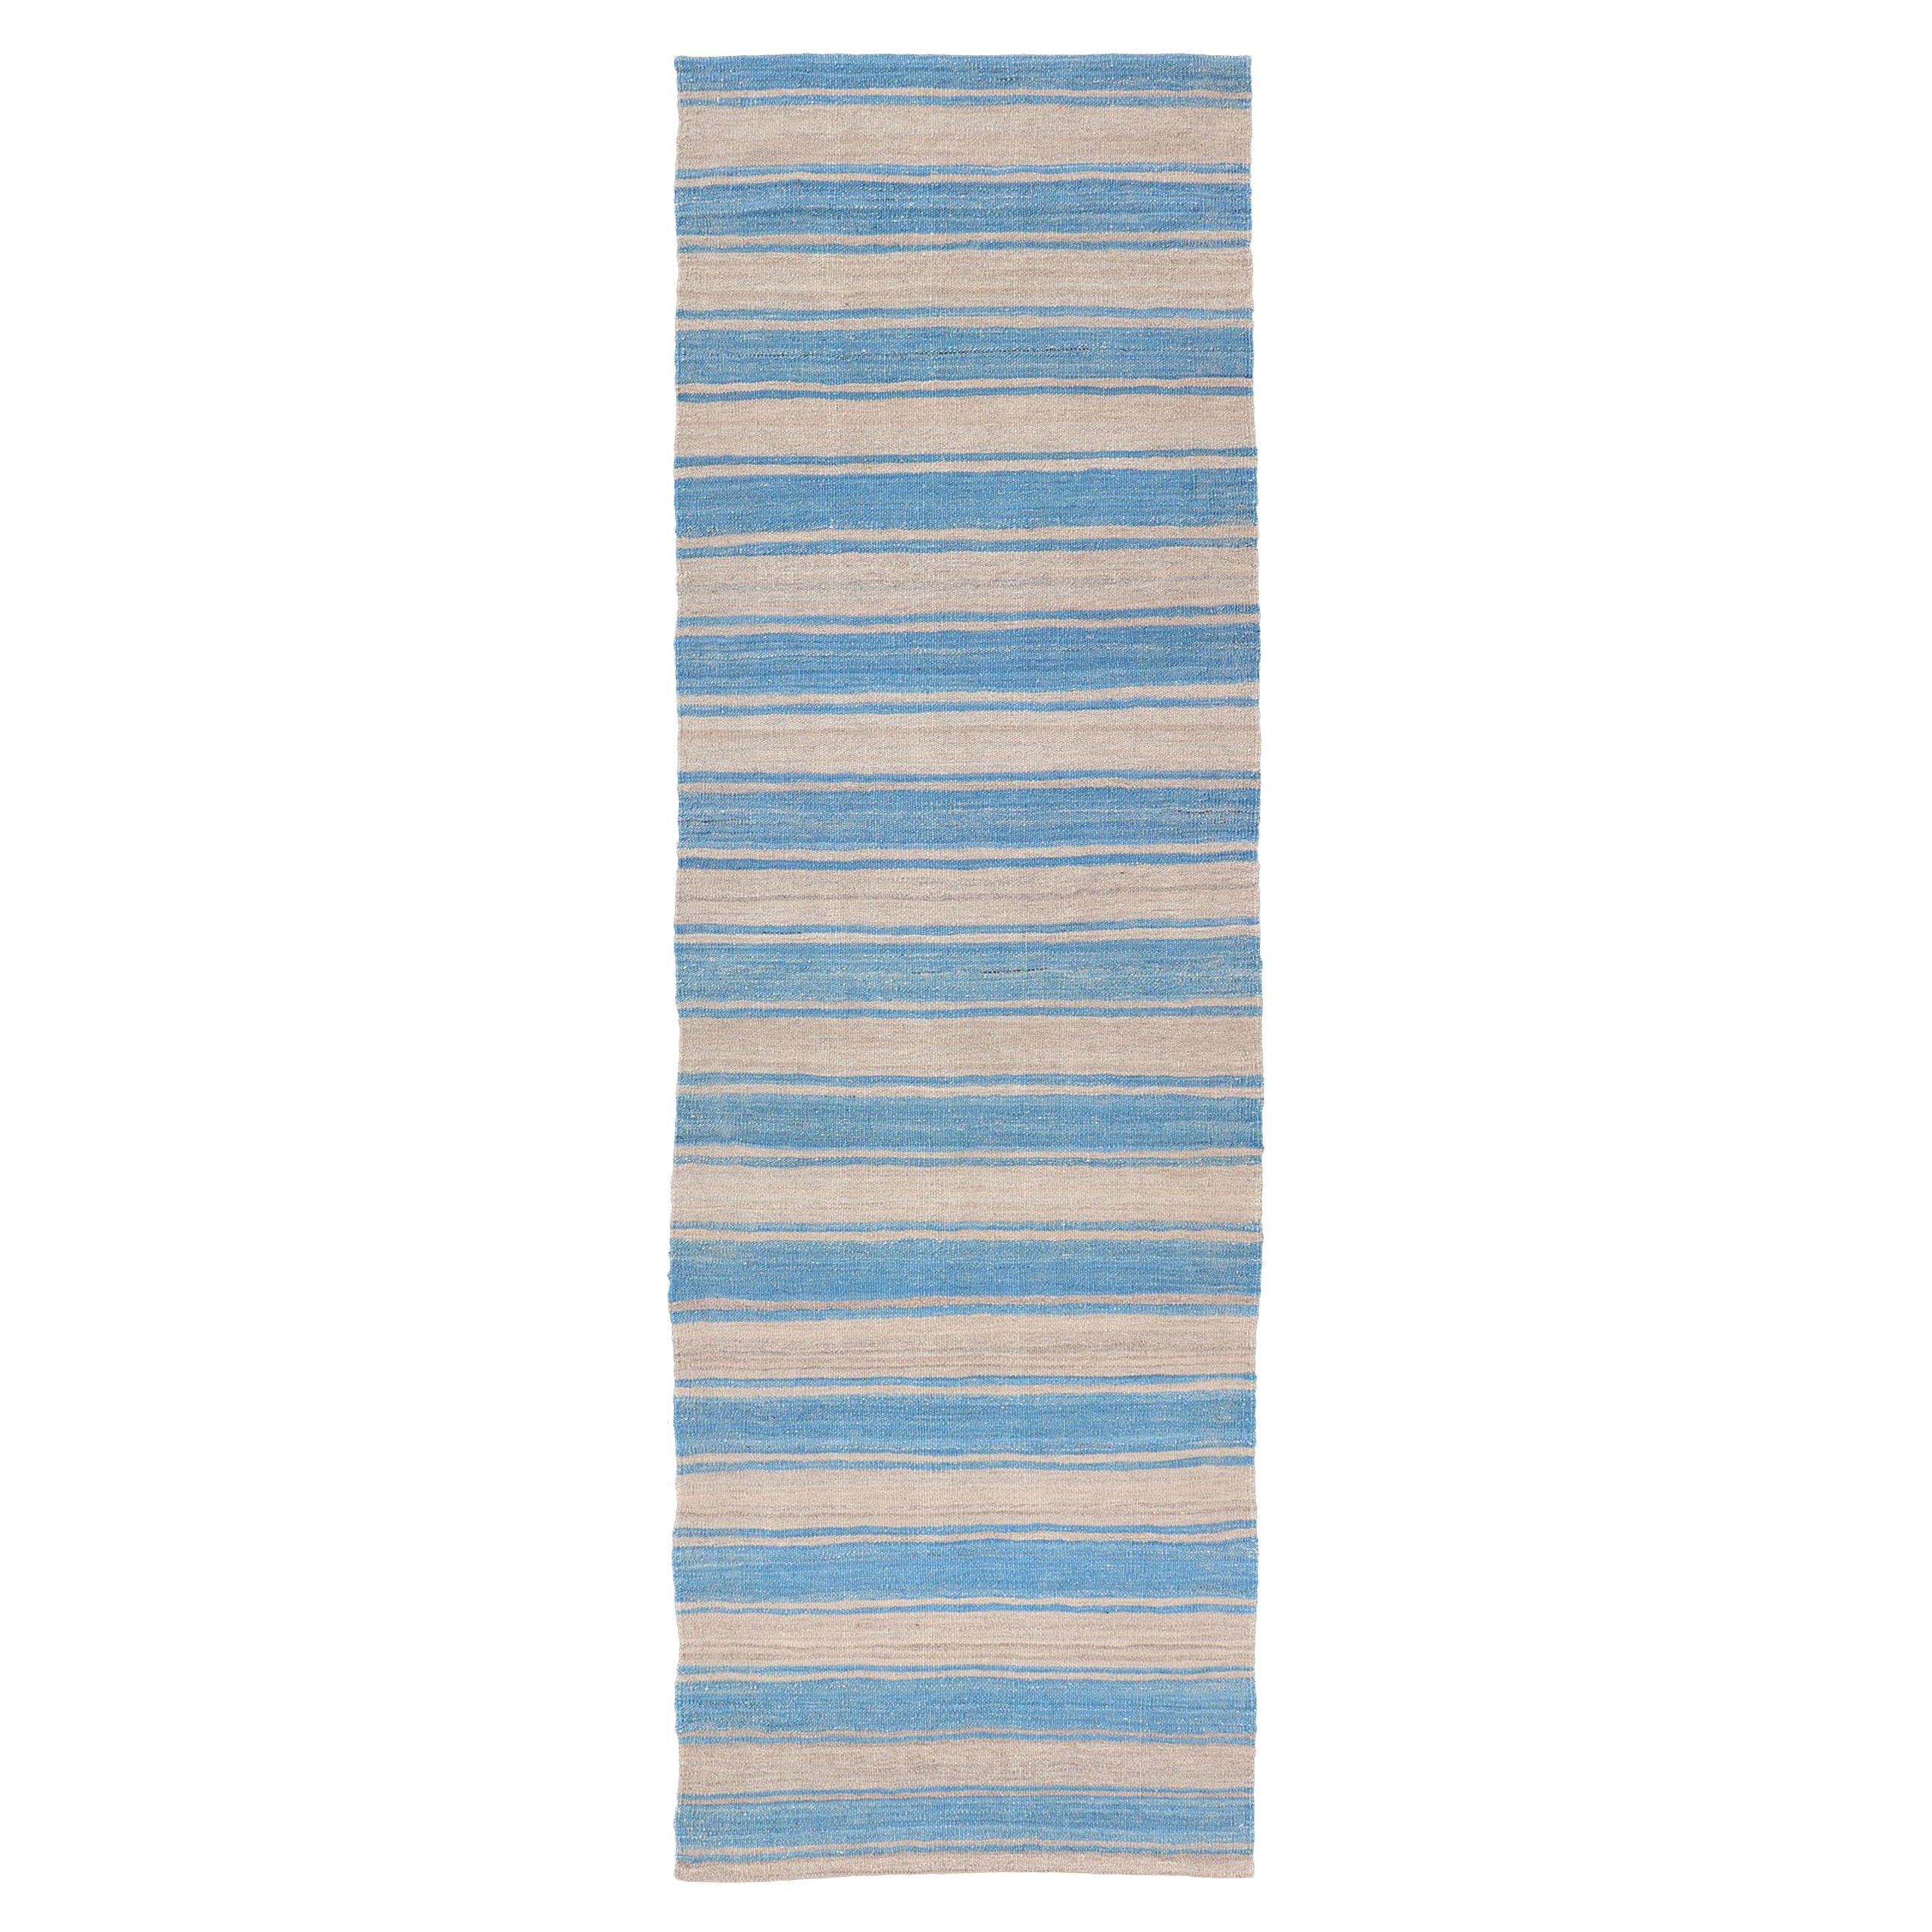 Tapis Kilim moderne à tissage plat avec rayures dans des tons de bleu et de gris